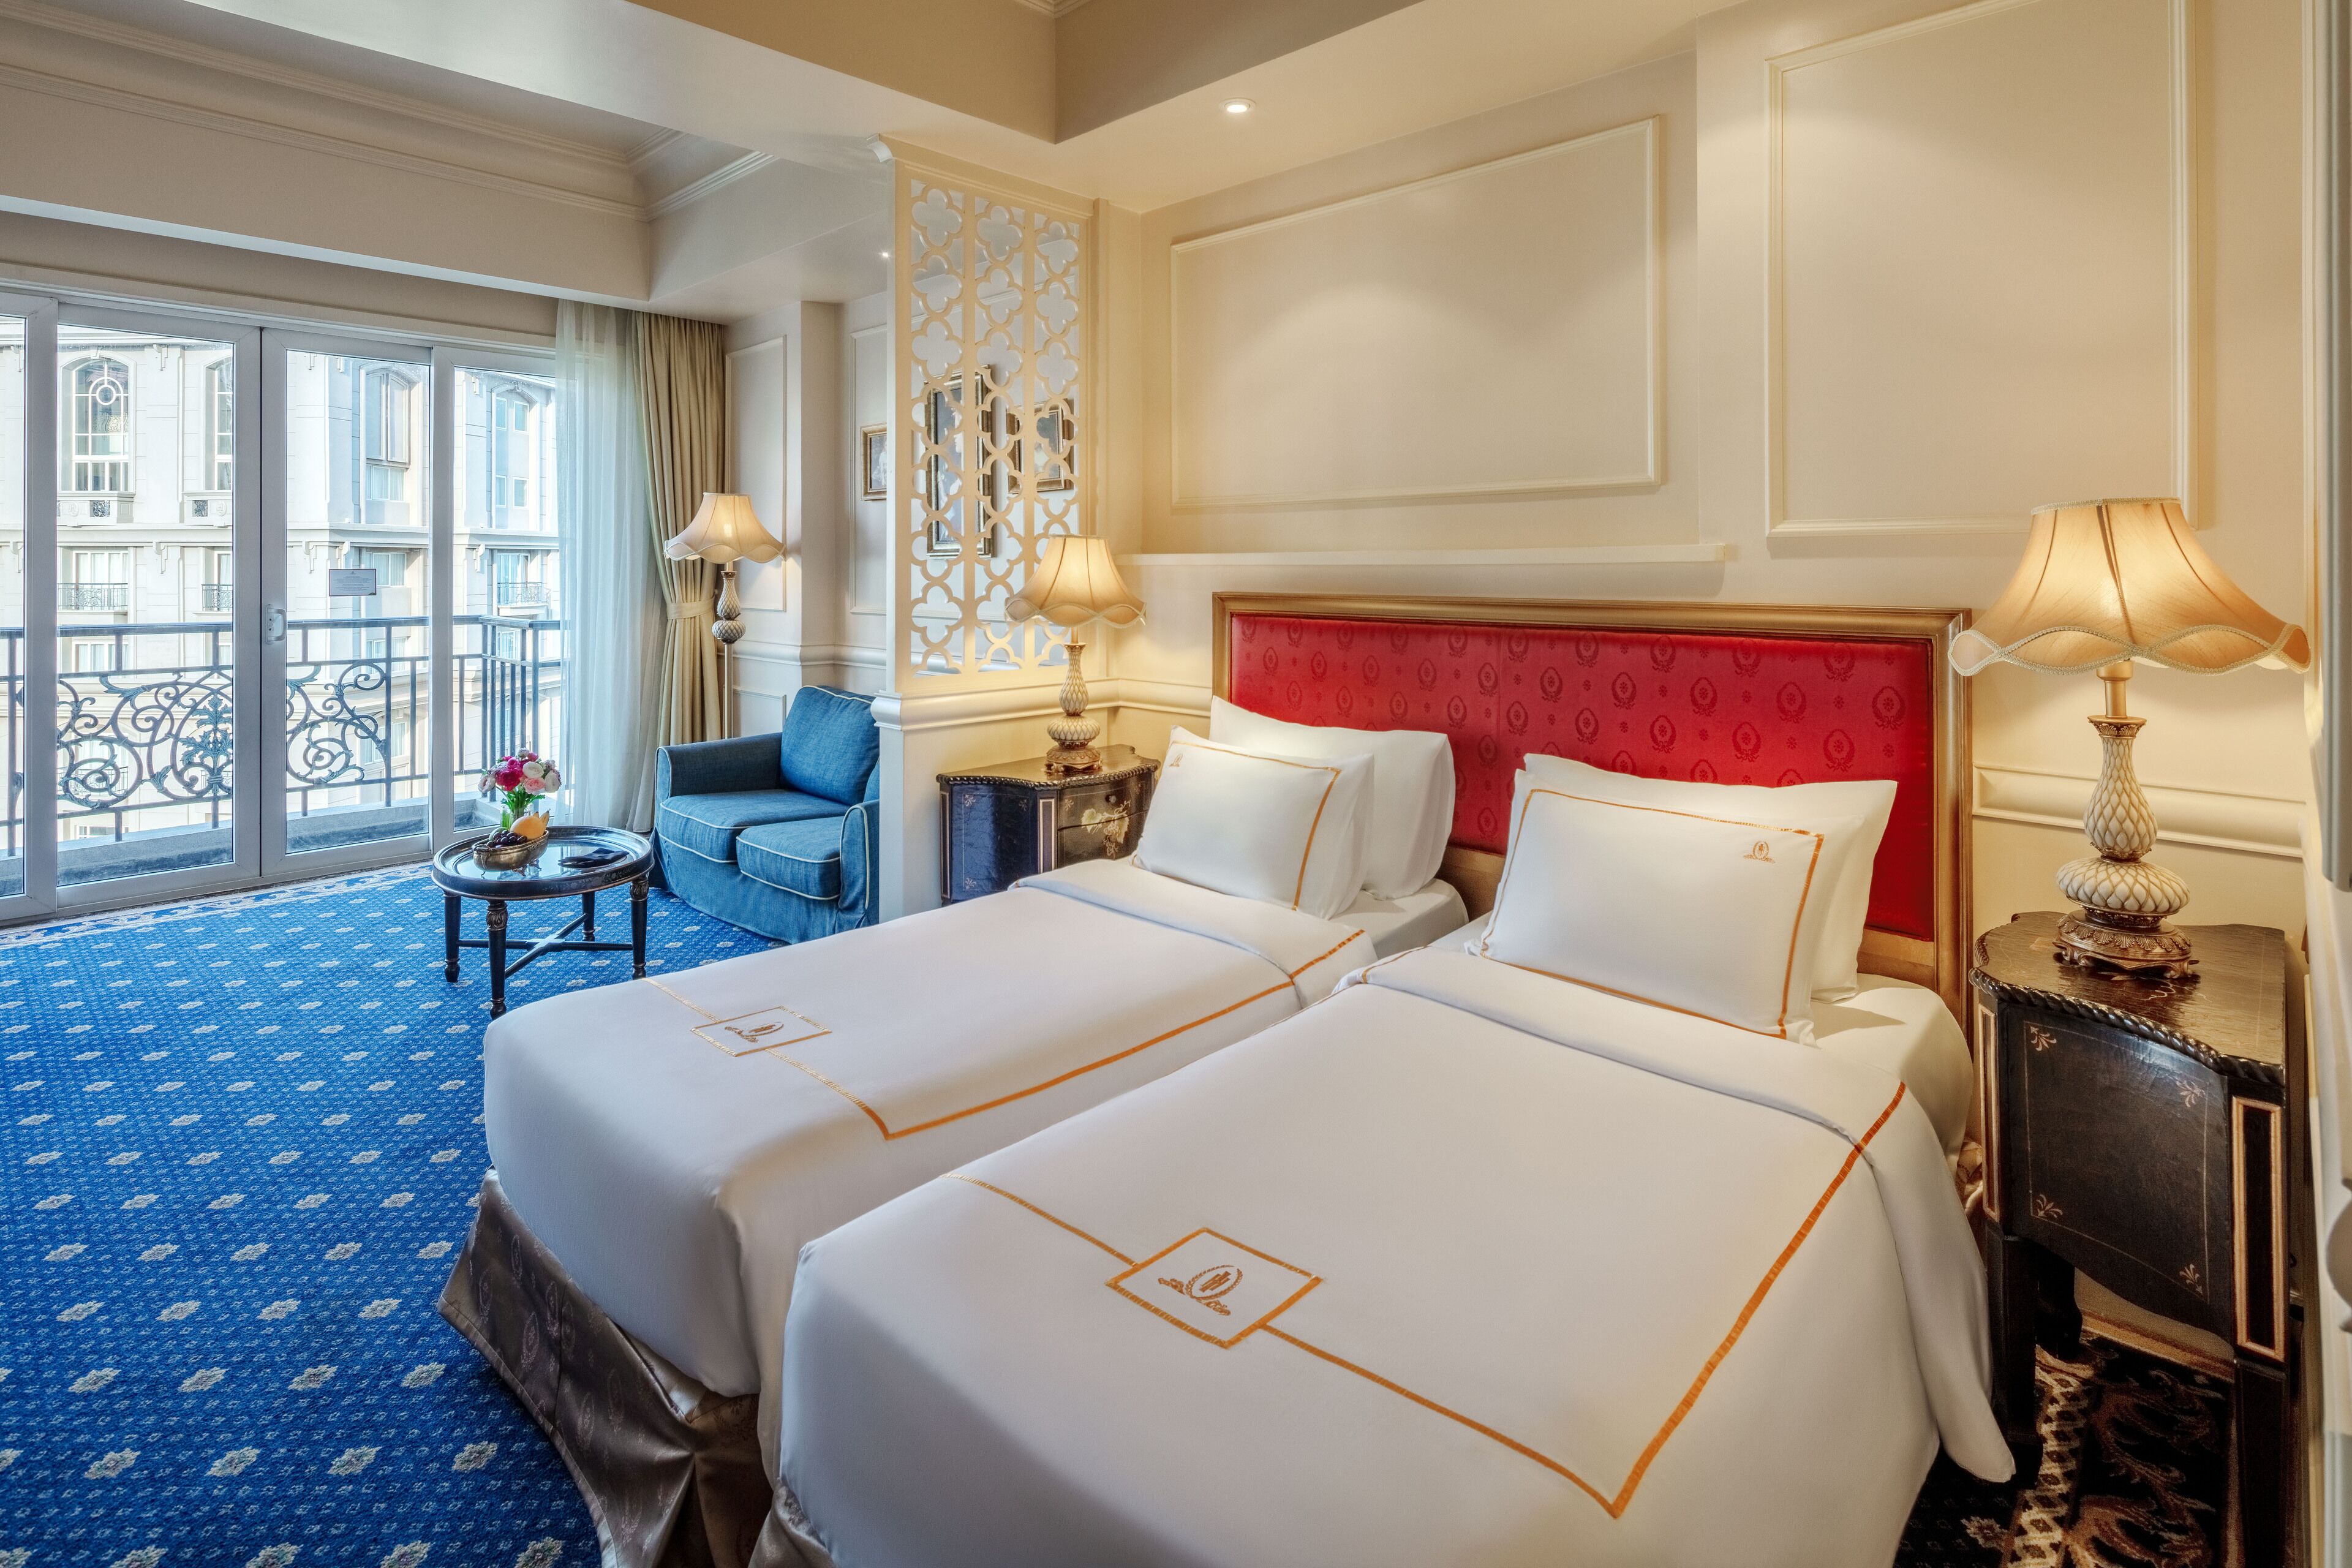 Review khách sạn Imperial Vũng Tàu – Thiên đường nghỉ dưỡng đẳng cấp 5 sao